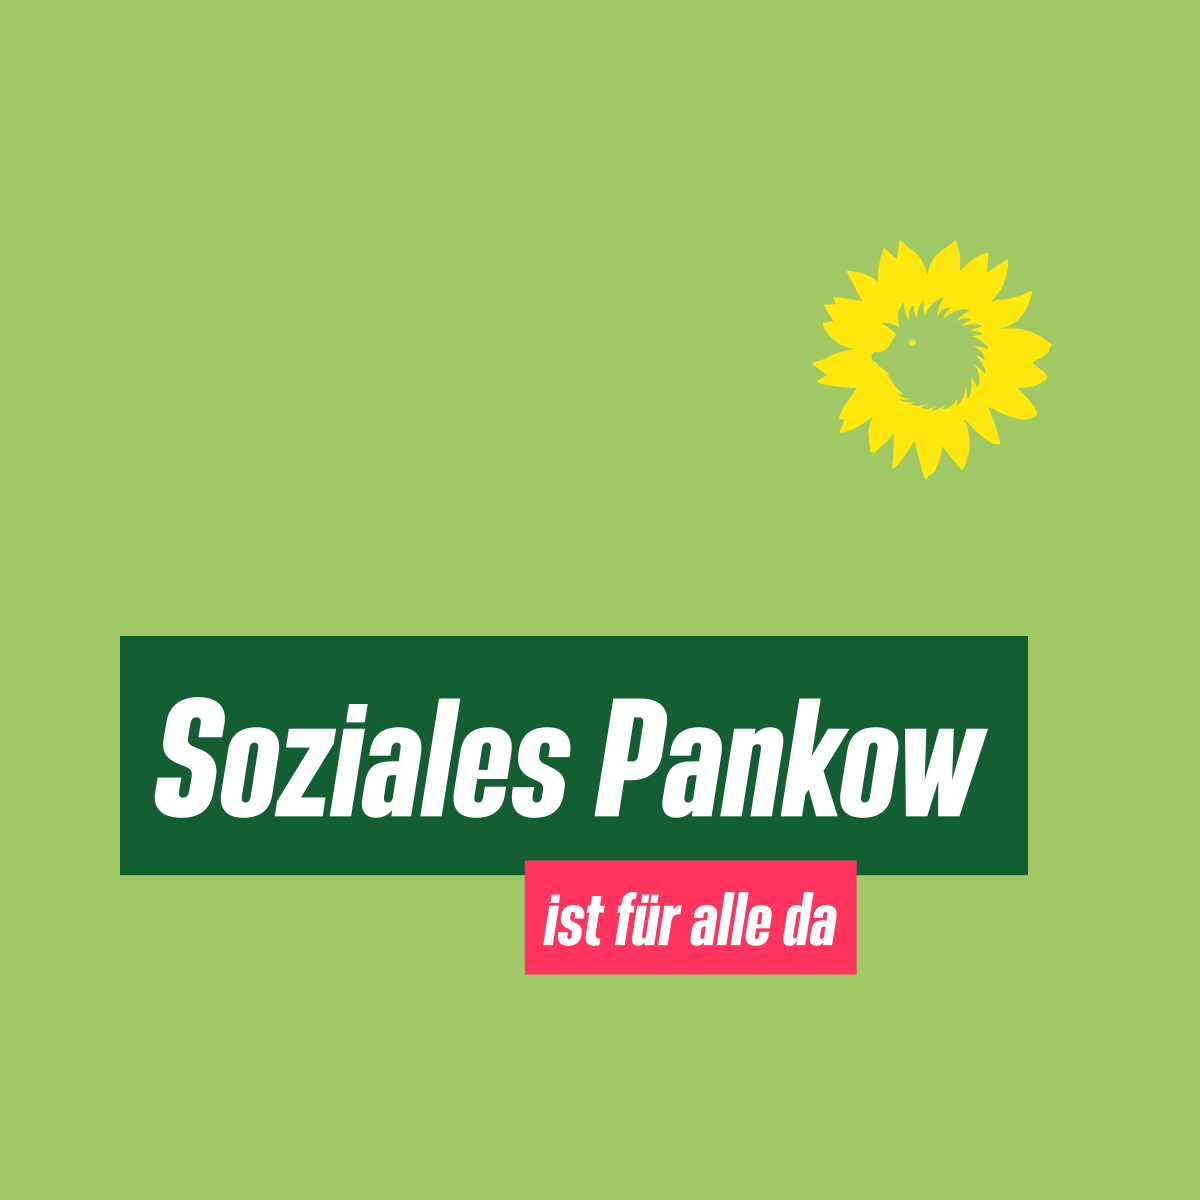 Text: "Soziales Pankow"